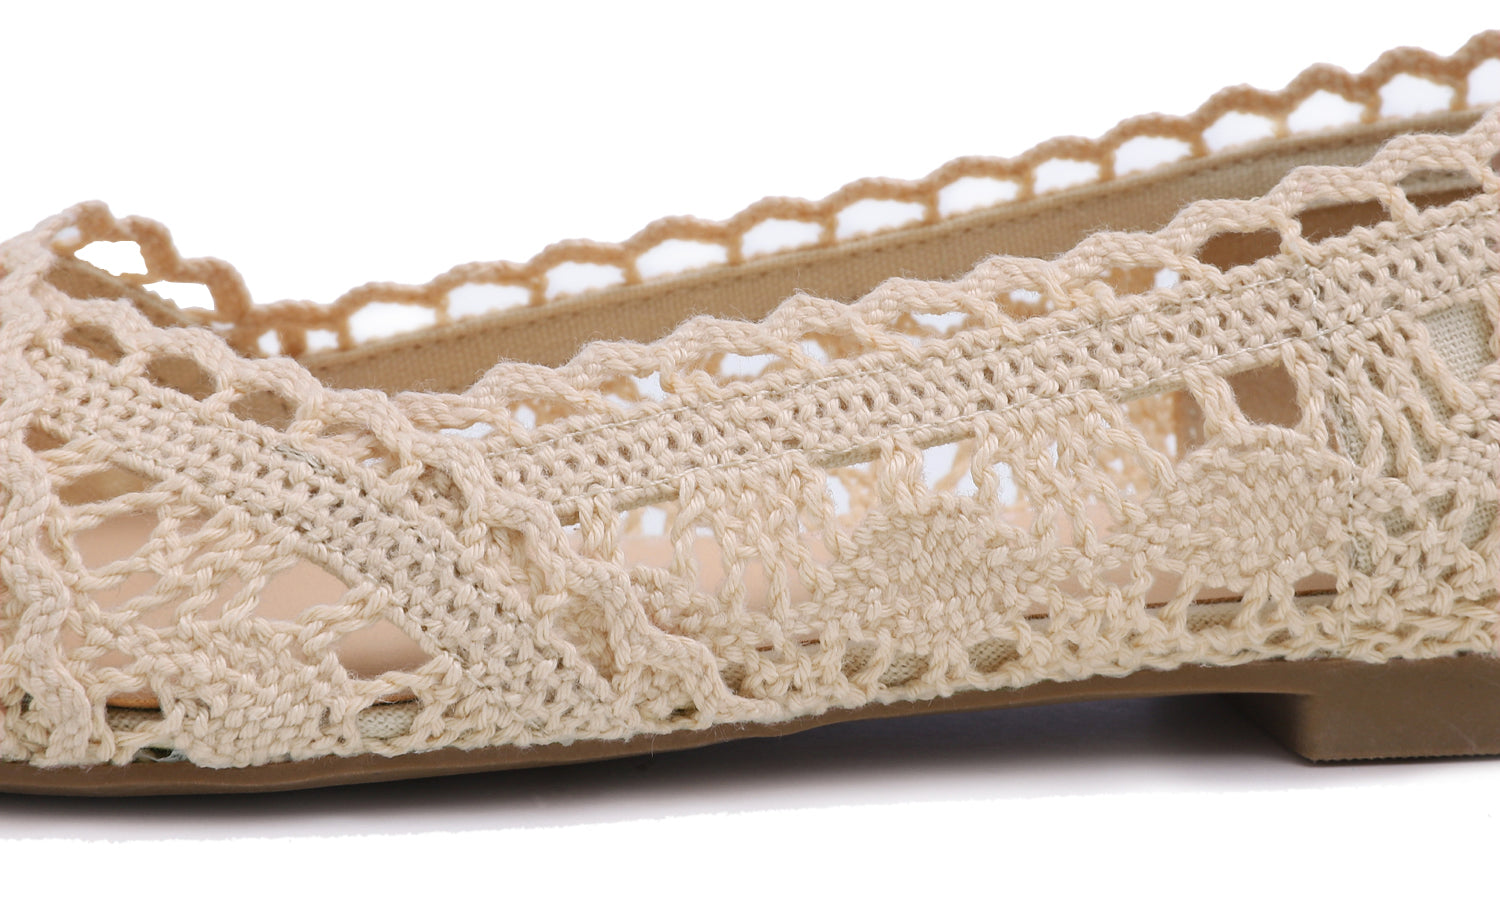 Feversole Round Toe Lace Ballet Crochet Flats Women's Comfy Breathable Shoes Beige Knit Crochet